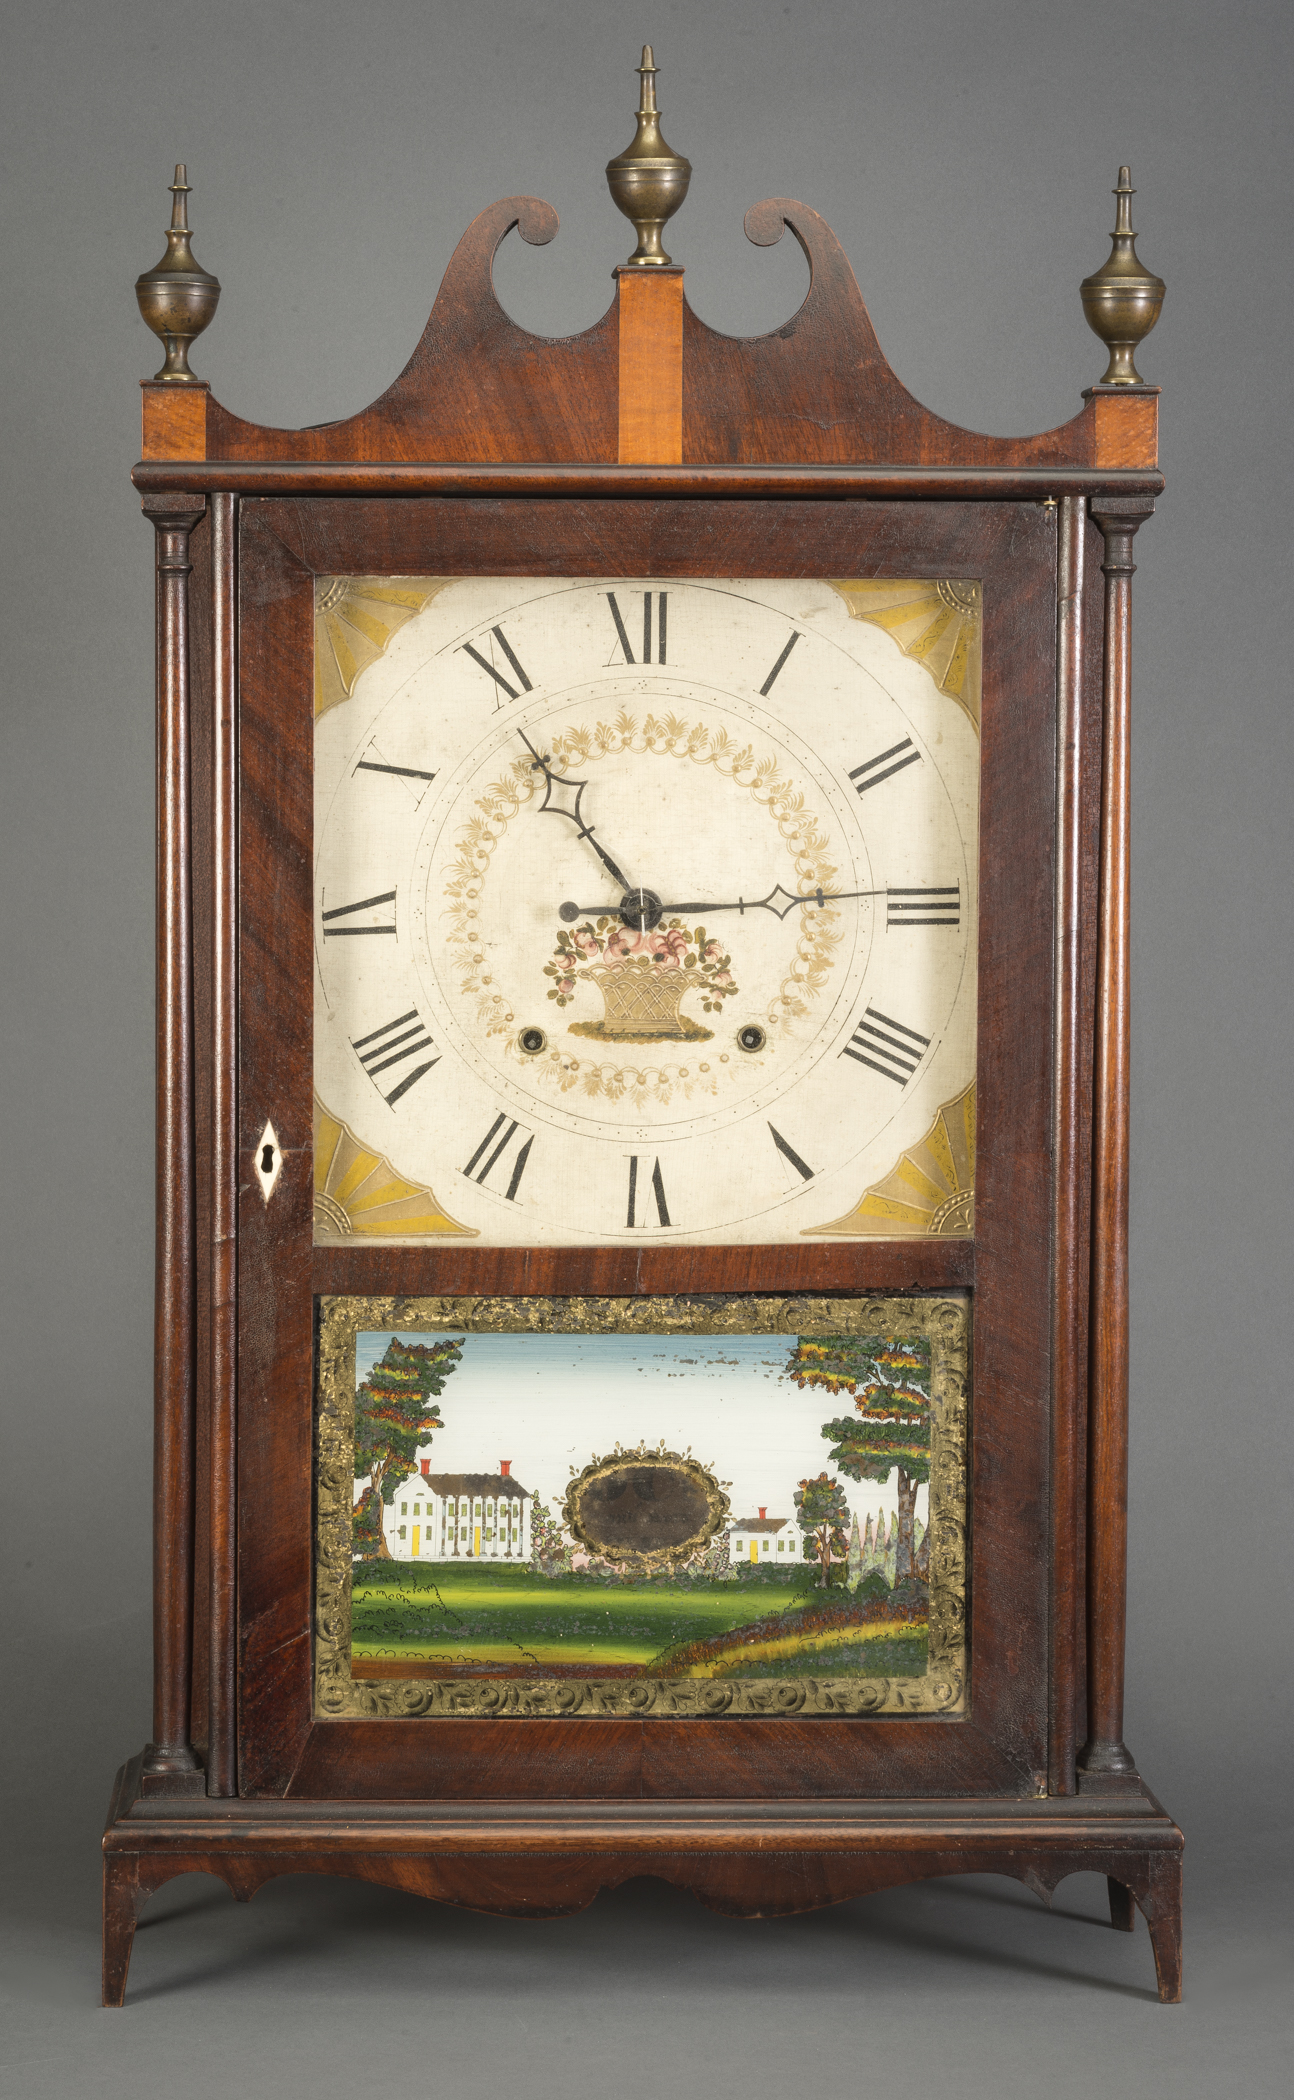 Clock - Mantel clock